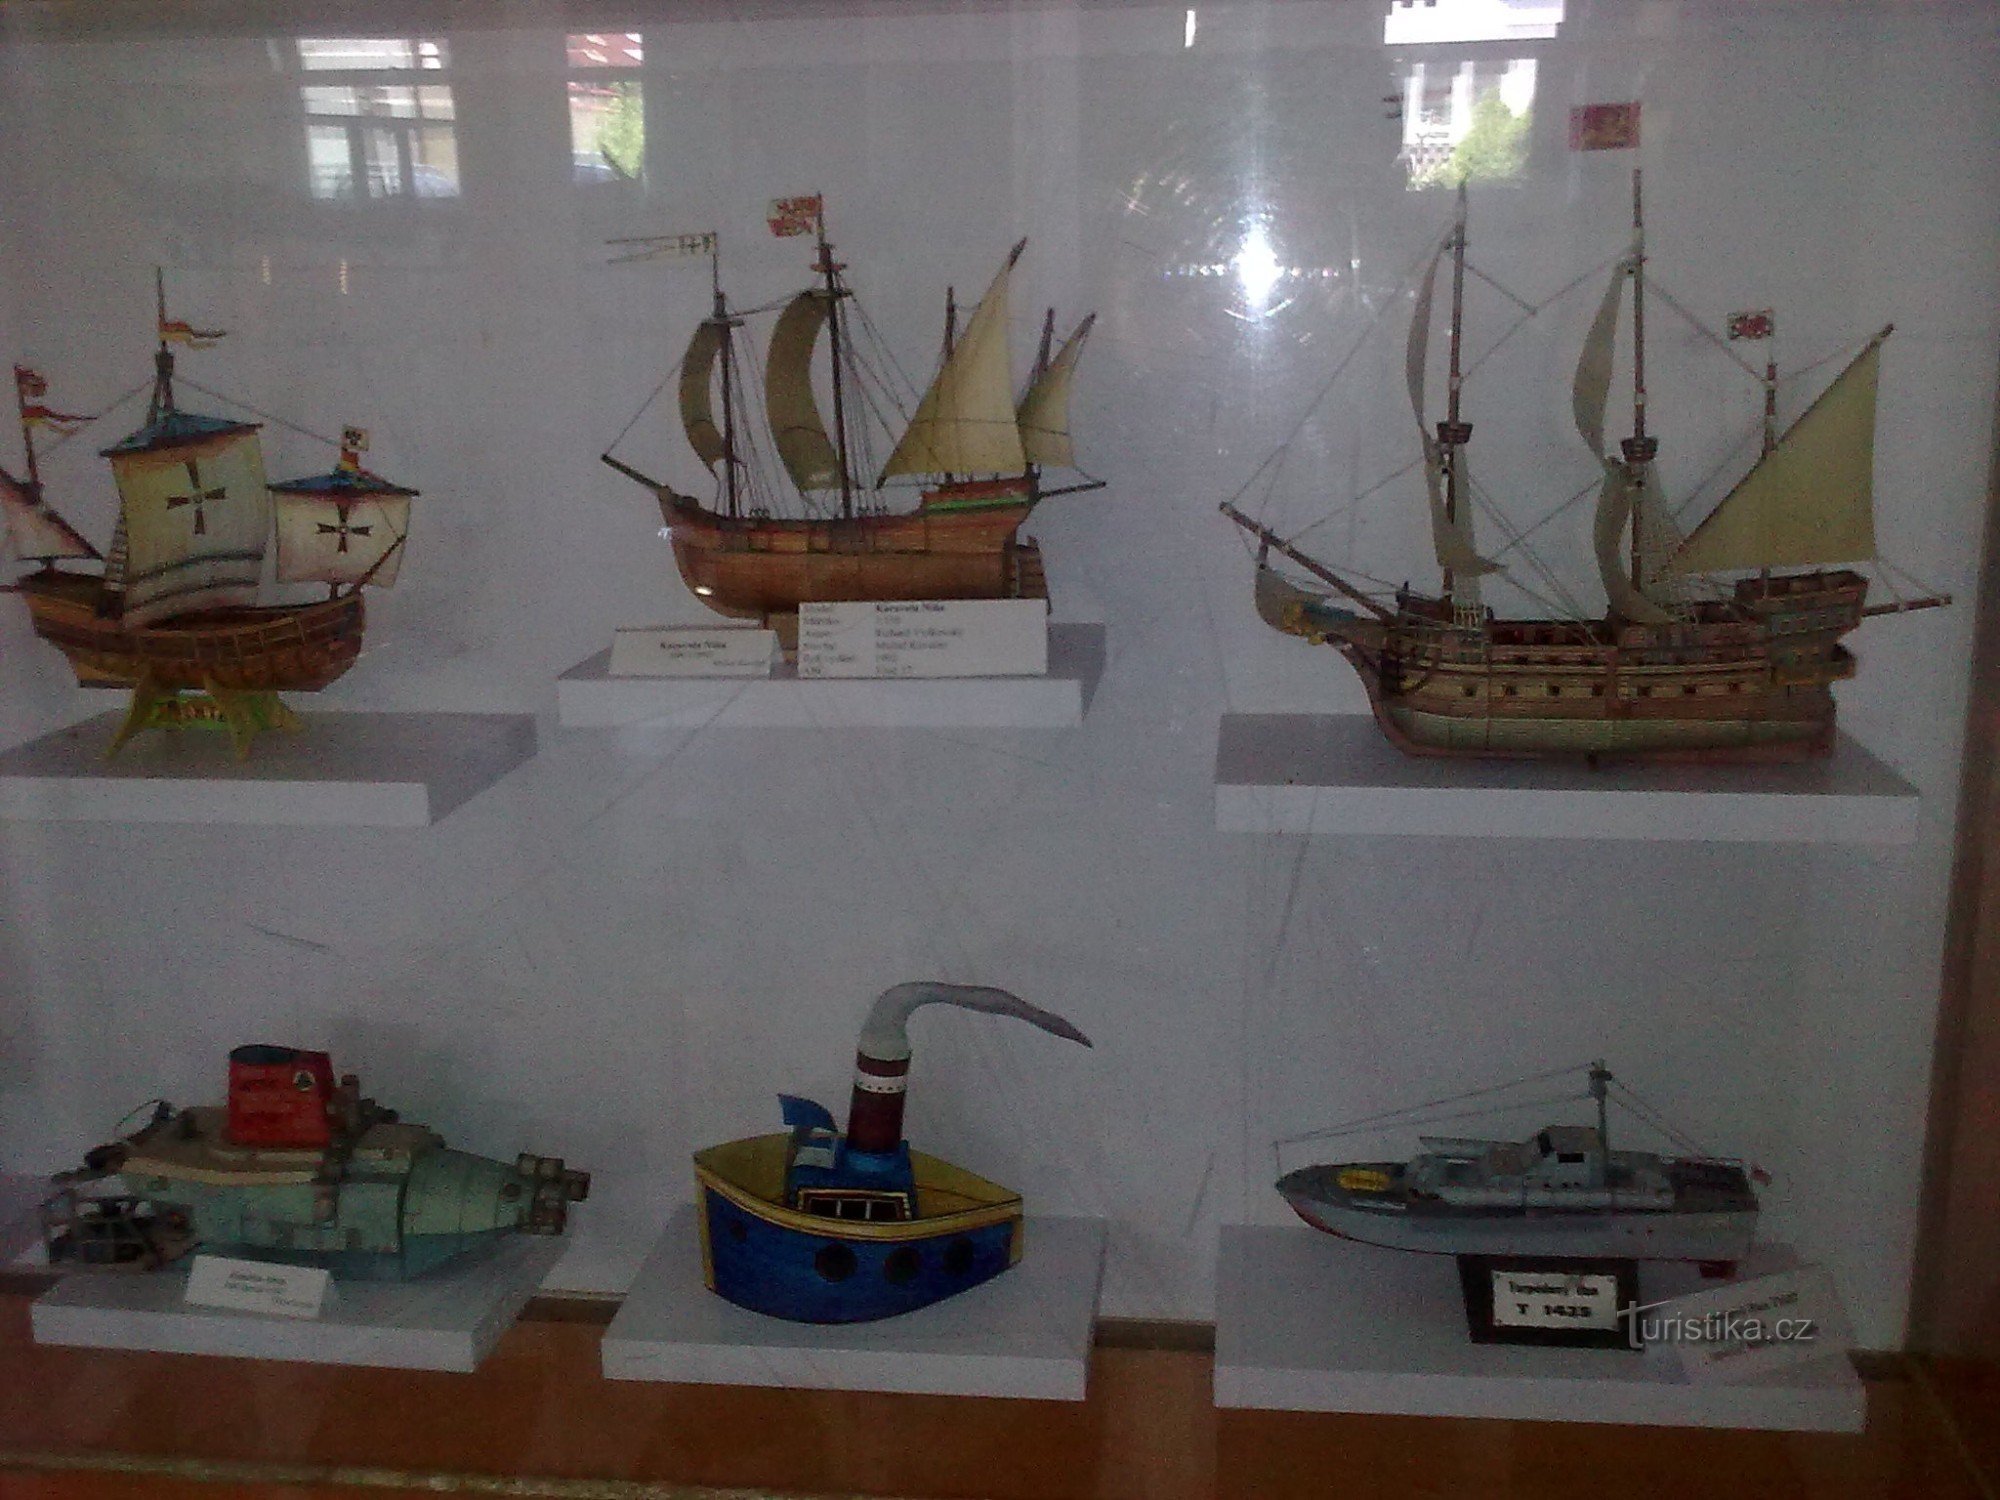 Museum of paper models in Polici n Metuji